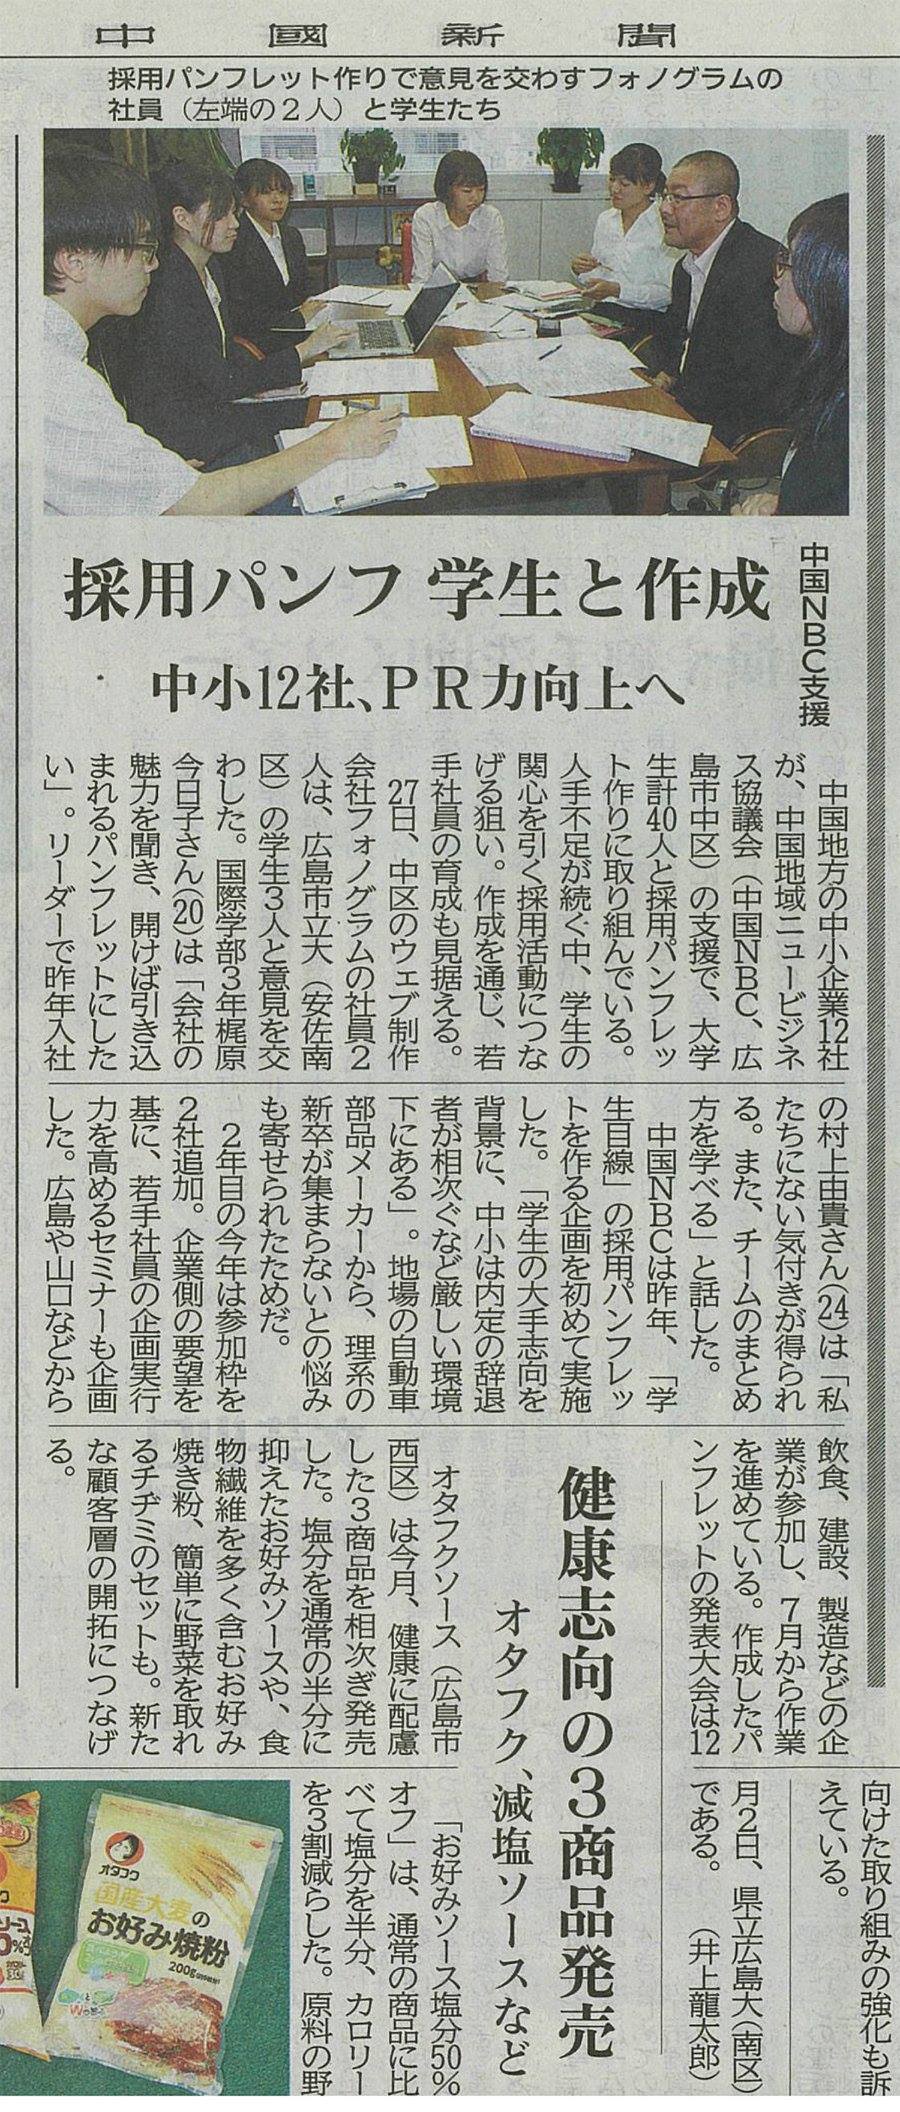 https://www.phonogram.co.jp/news/images/news0928.jpg